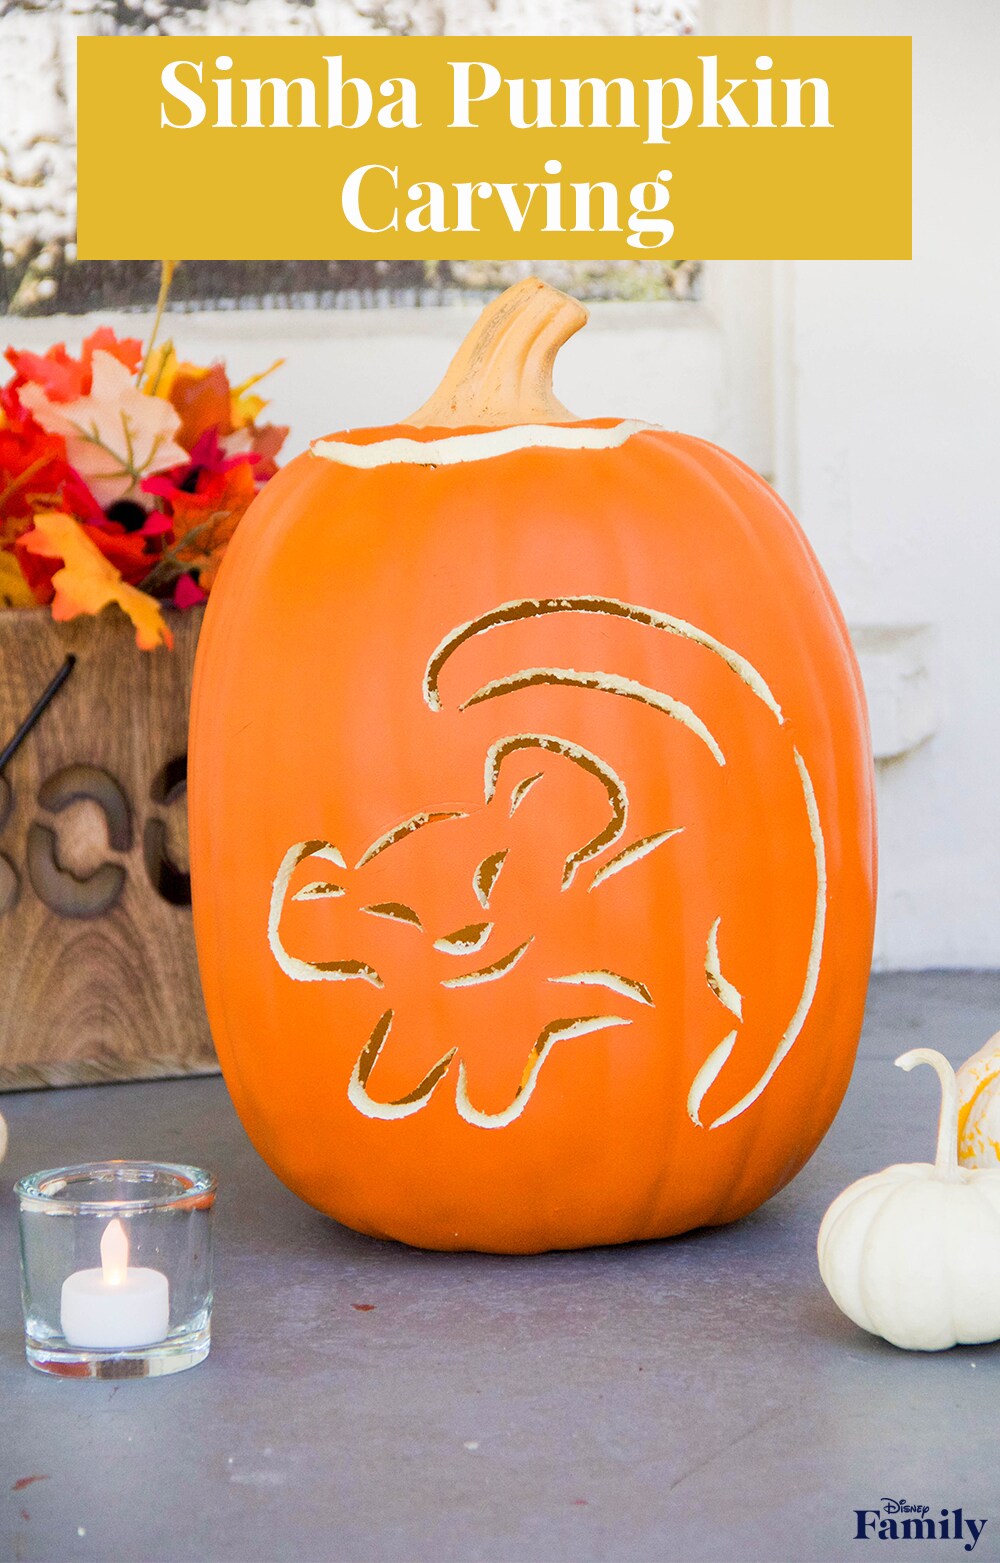 "Simba Pumpkin Carving".